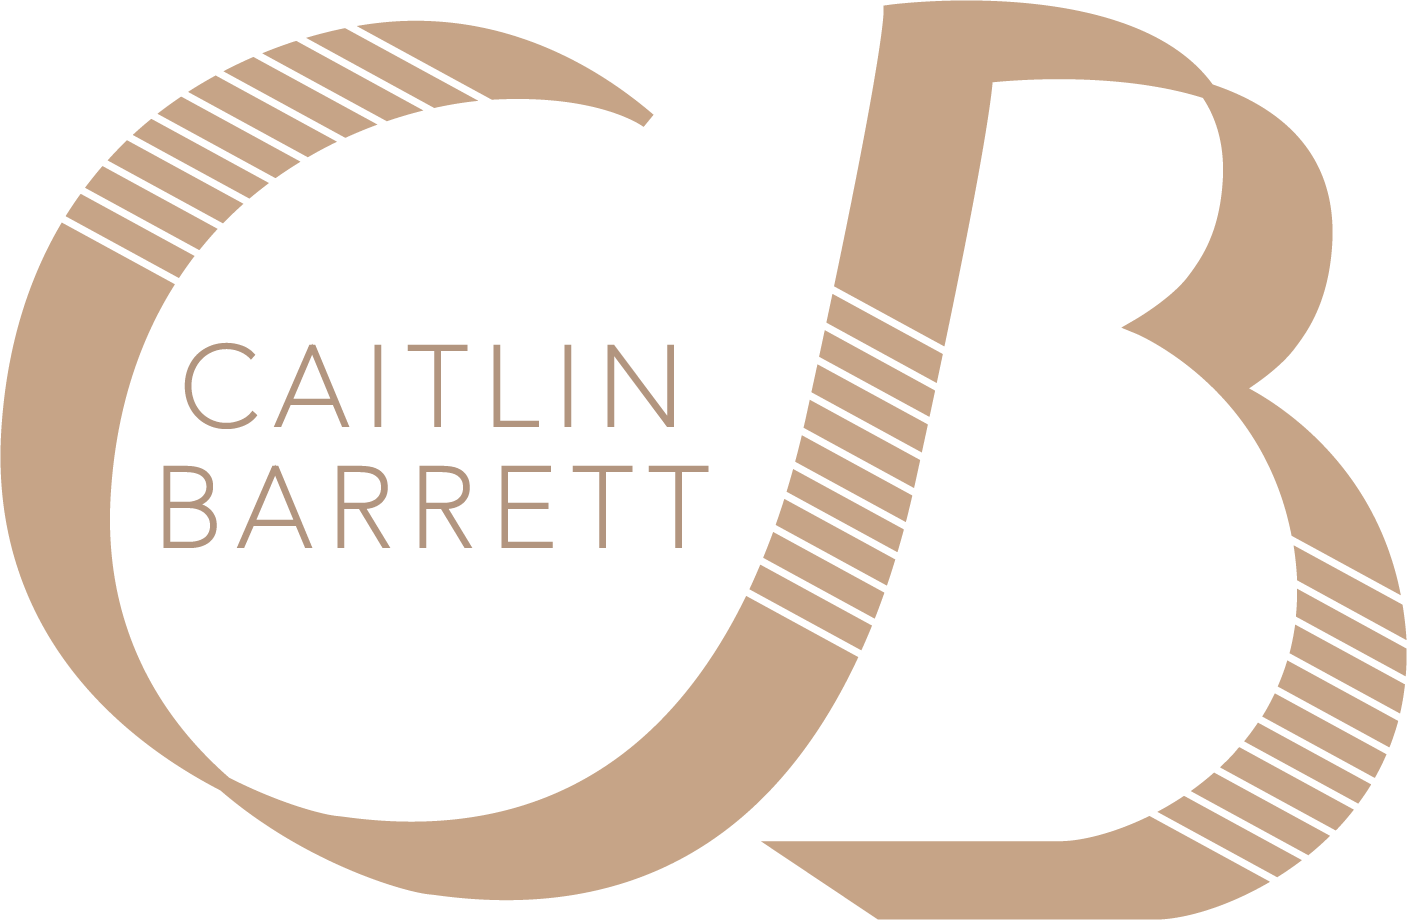 Caitlin Barrett Designs